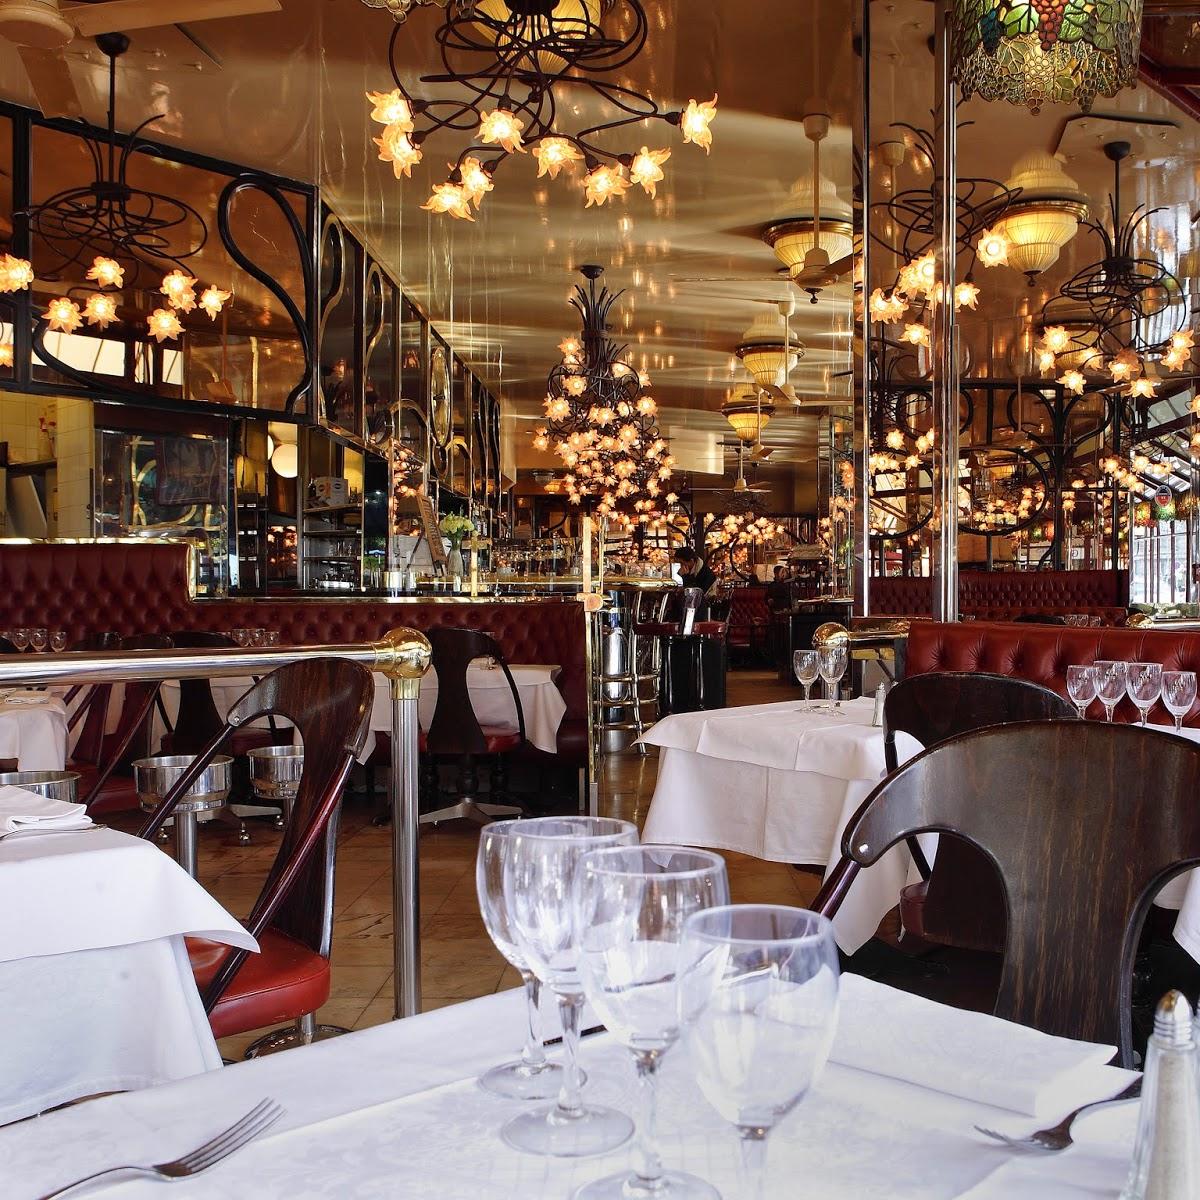 Restaurant "The European" in Paris